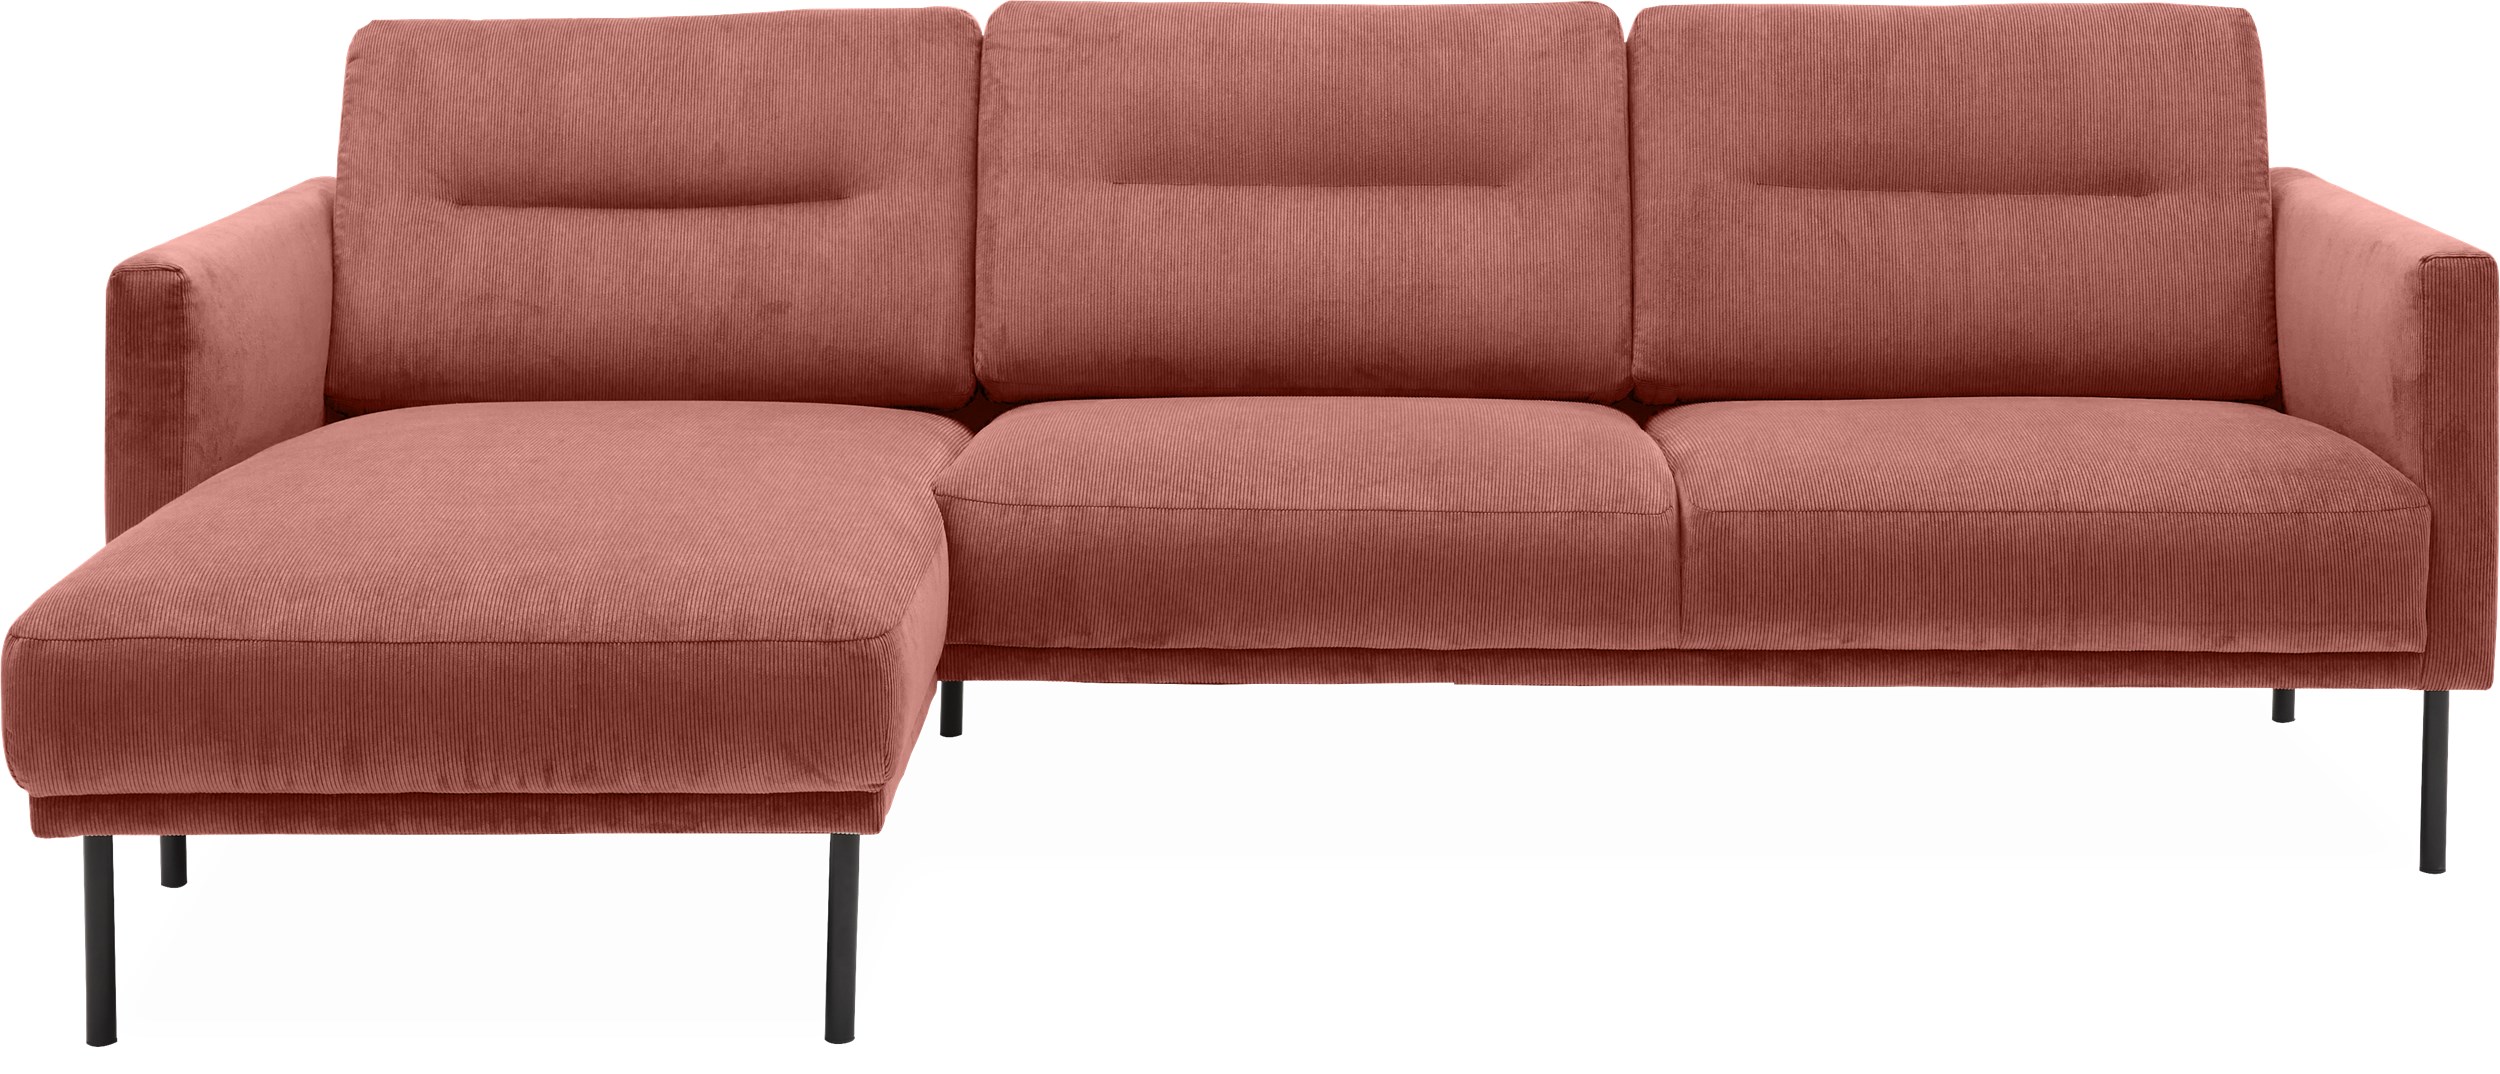 Larvik venstrevendt sofa med chaiselong - Wave 110 Ginger stof og ben i sortlakeret metal